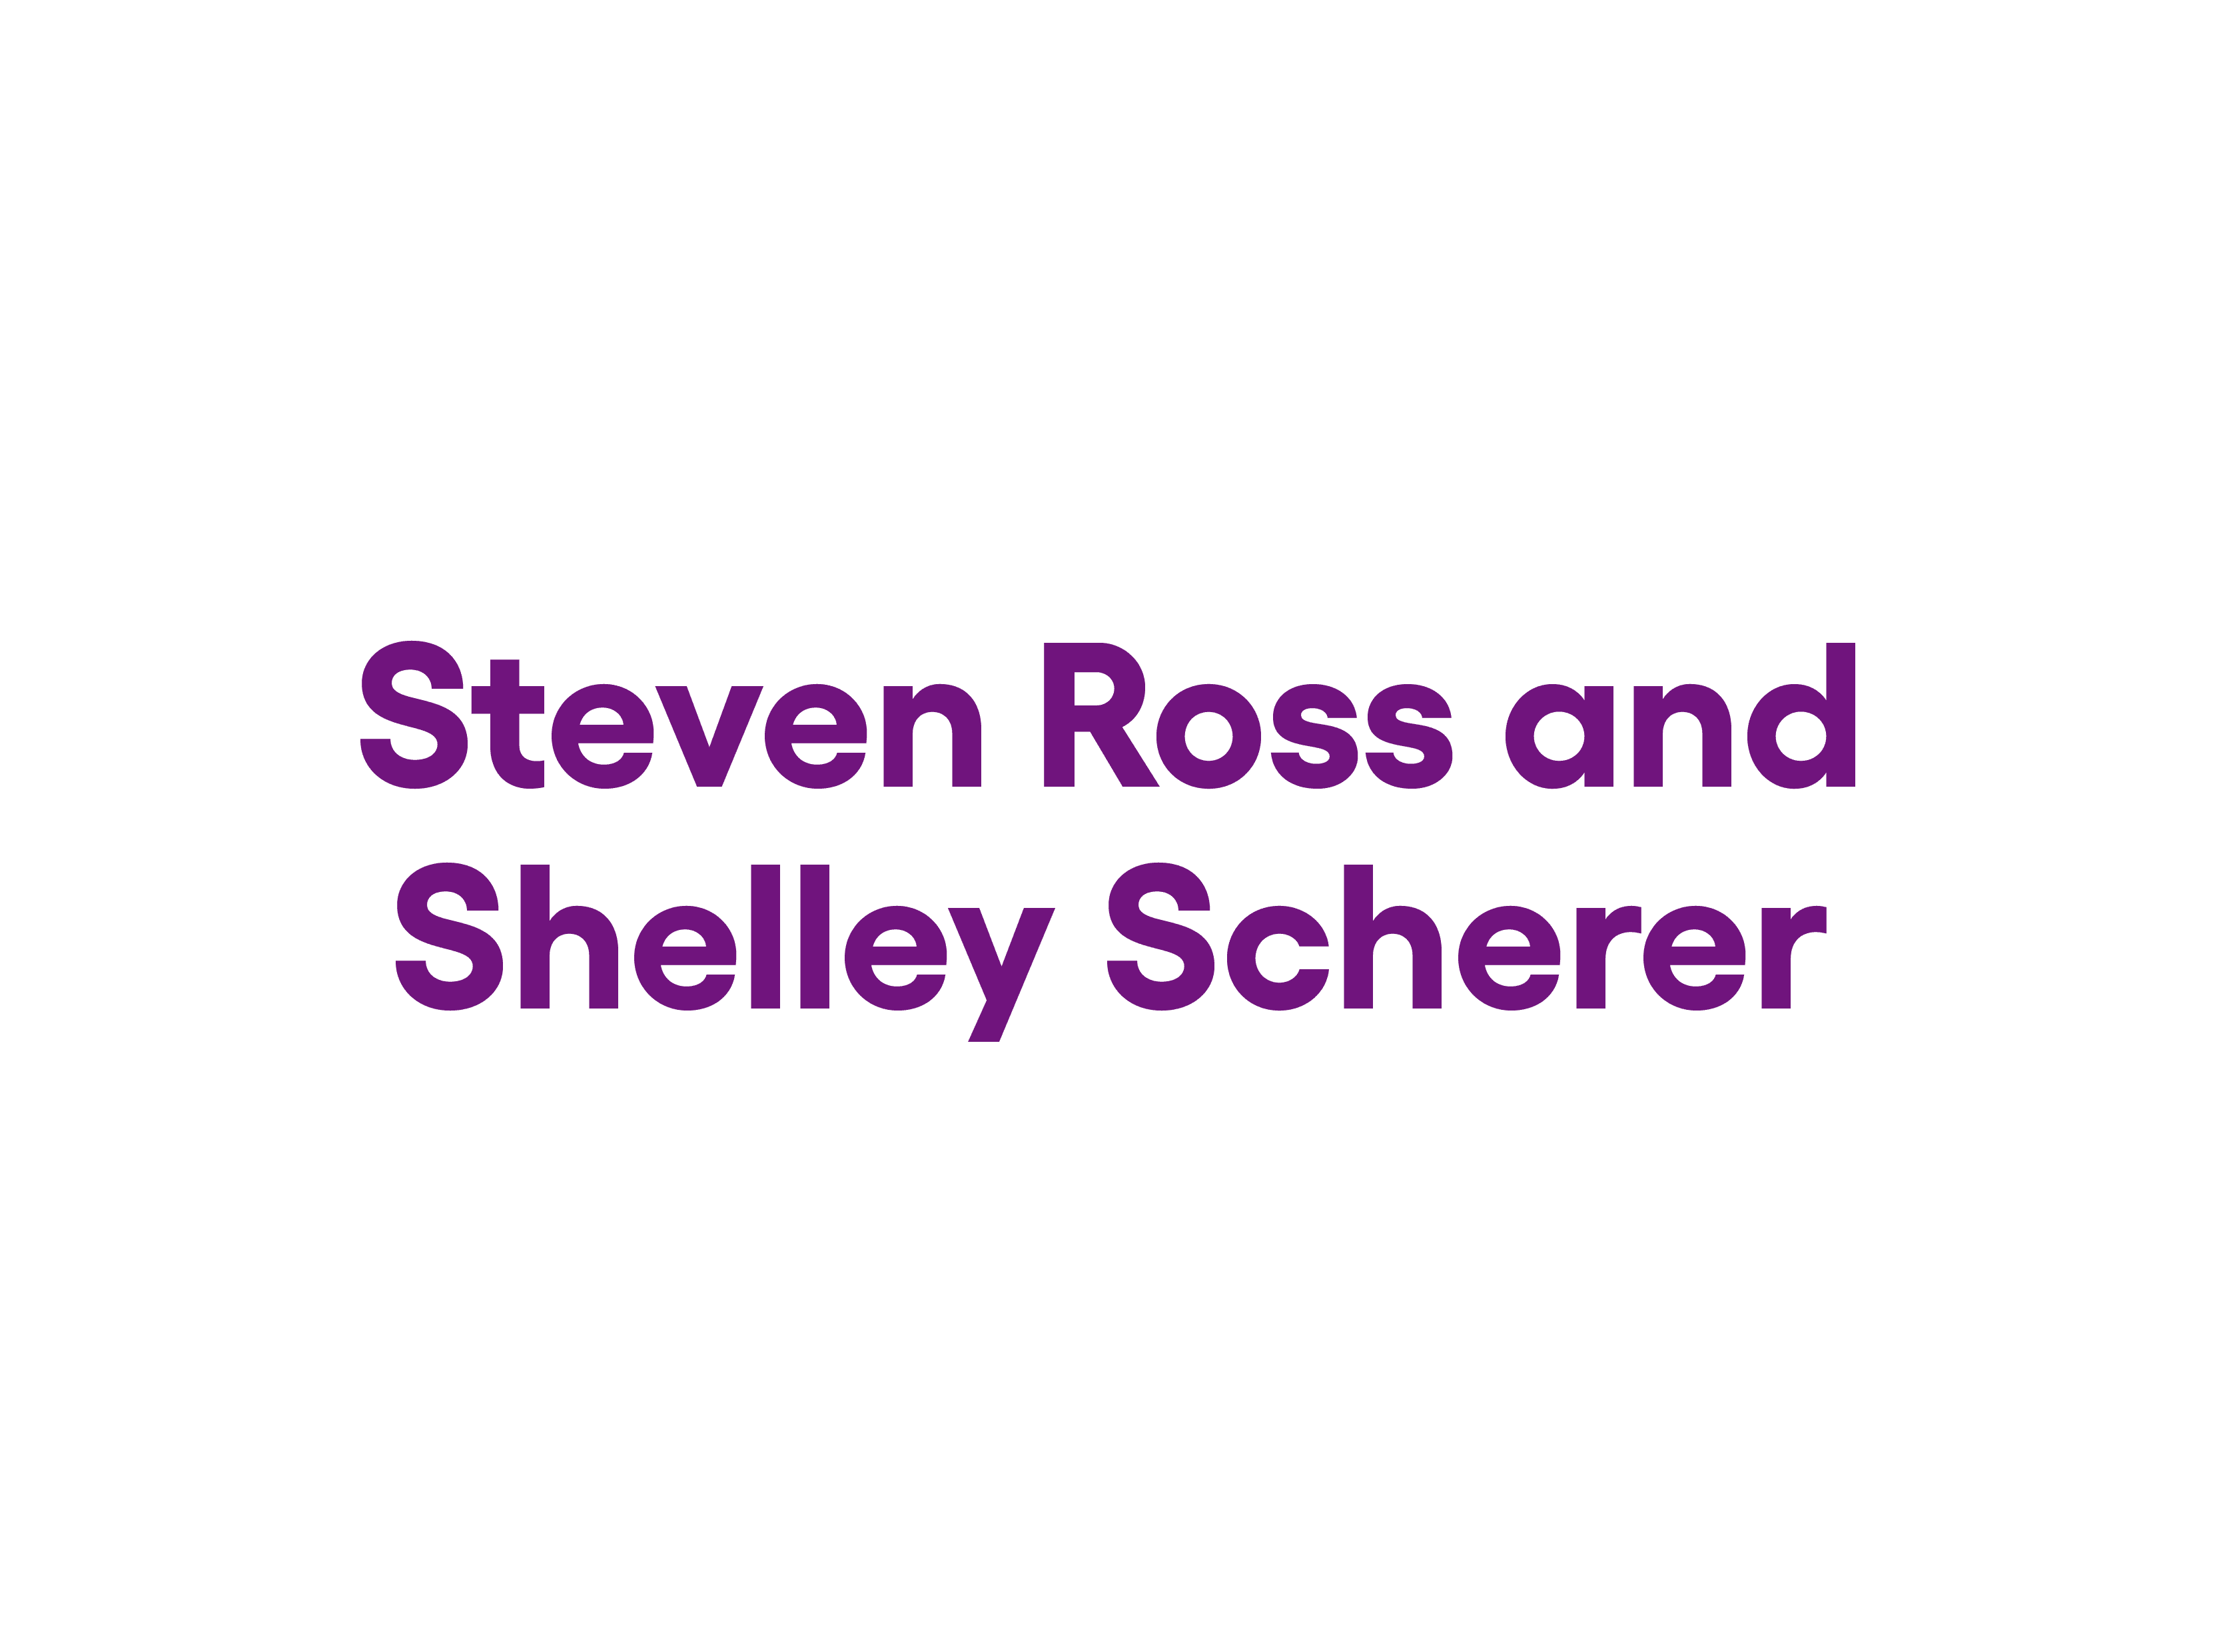 Steven Ross and Shelley Scherer